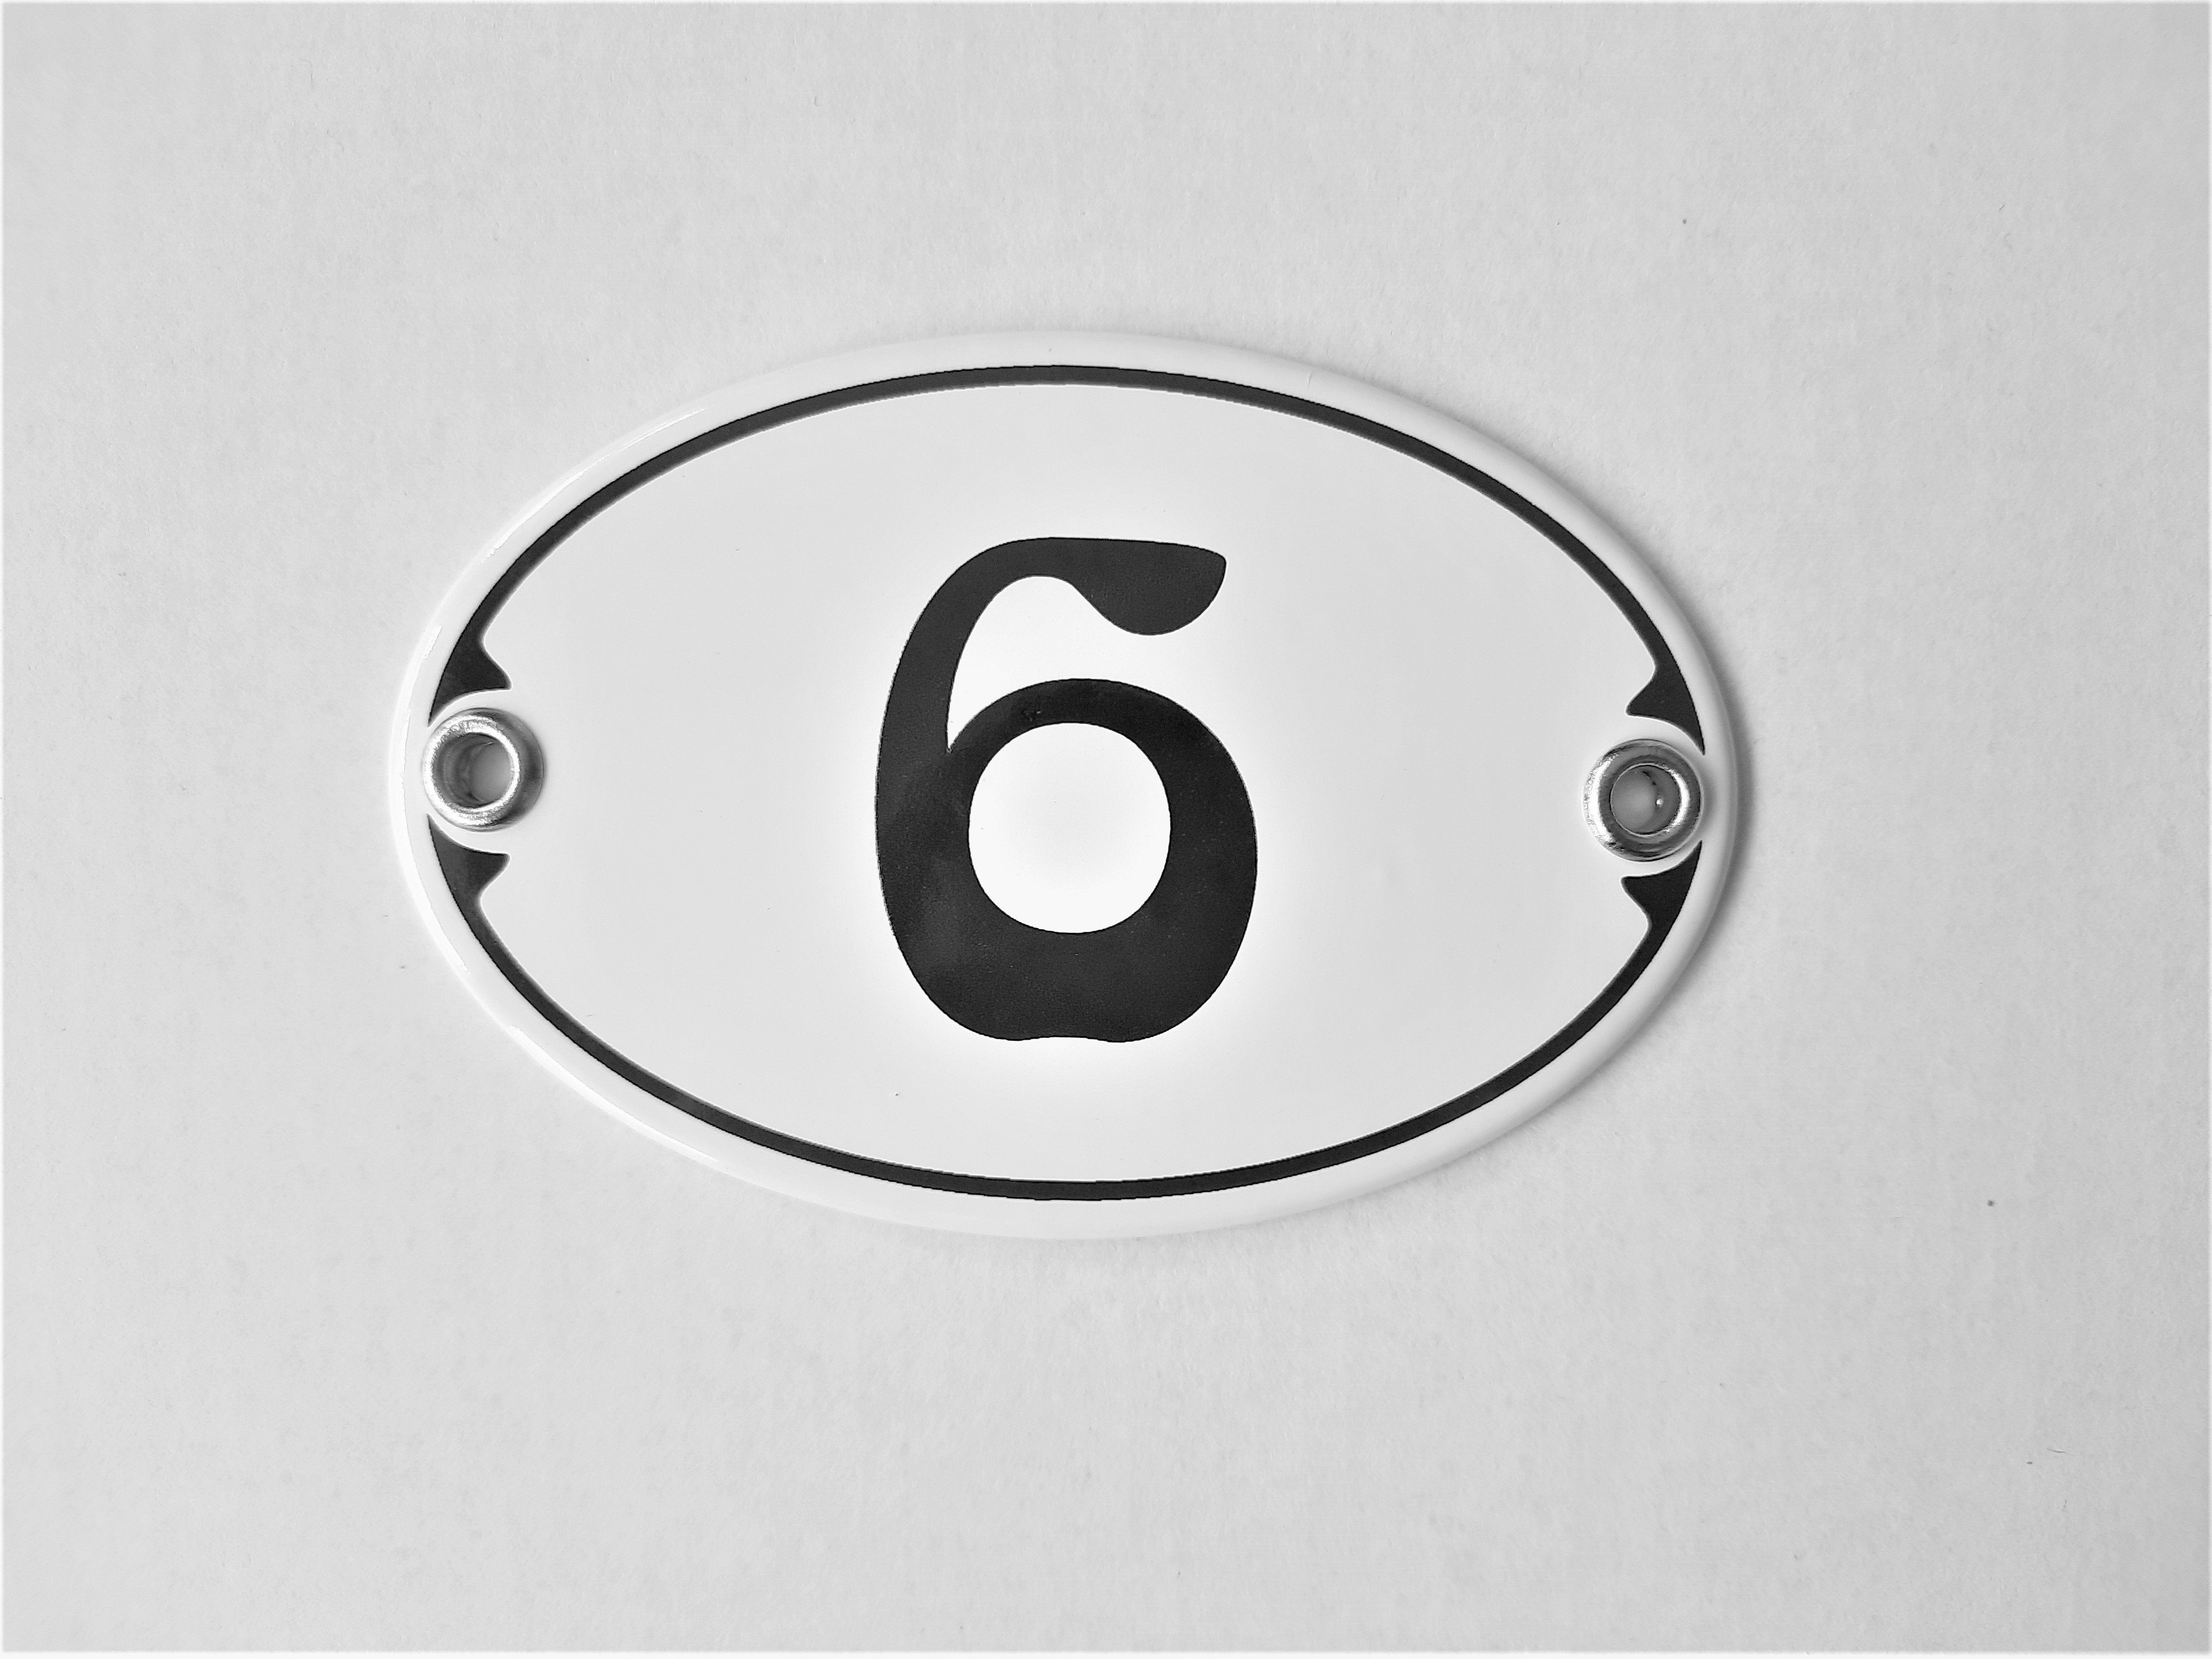 Elina Email Schilder Hausnummer Zahlenschild "6", (Emaille/Email)